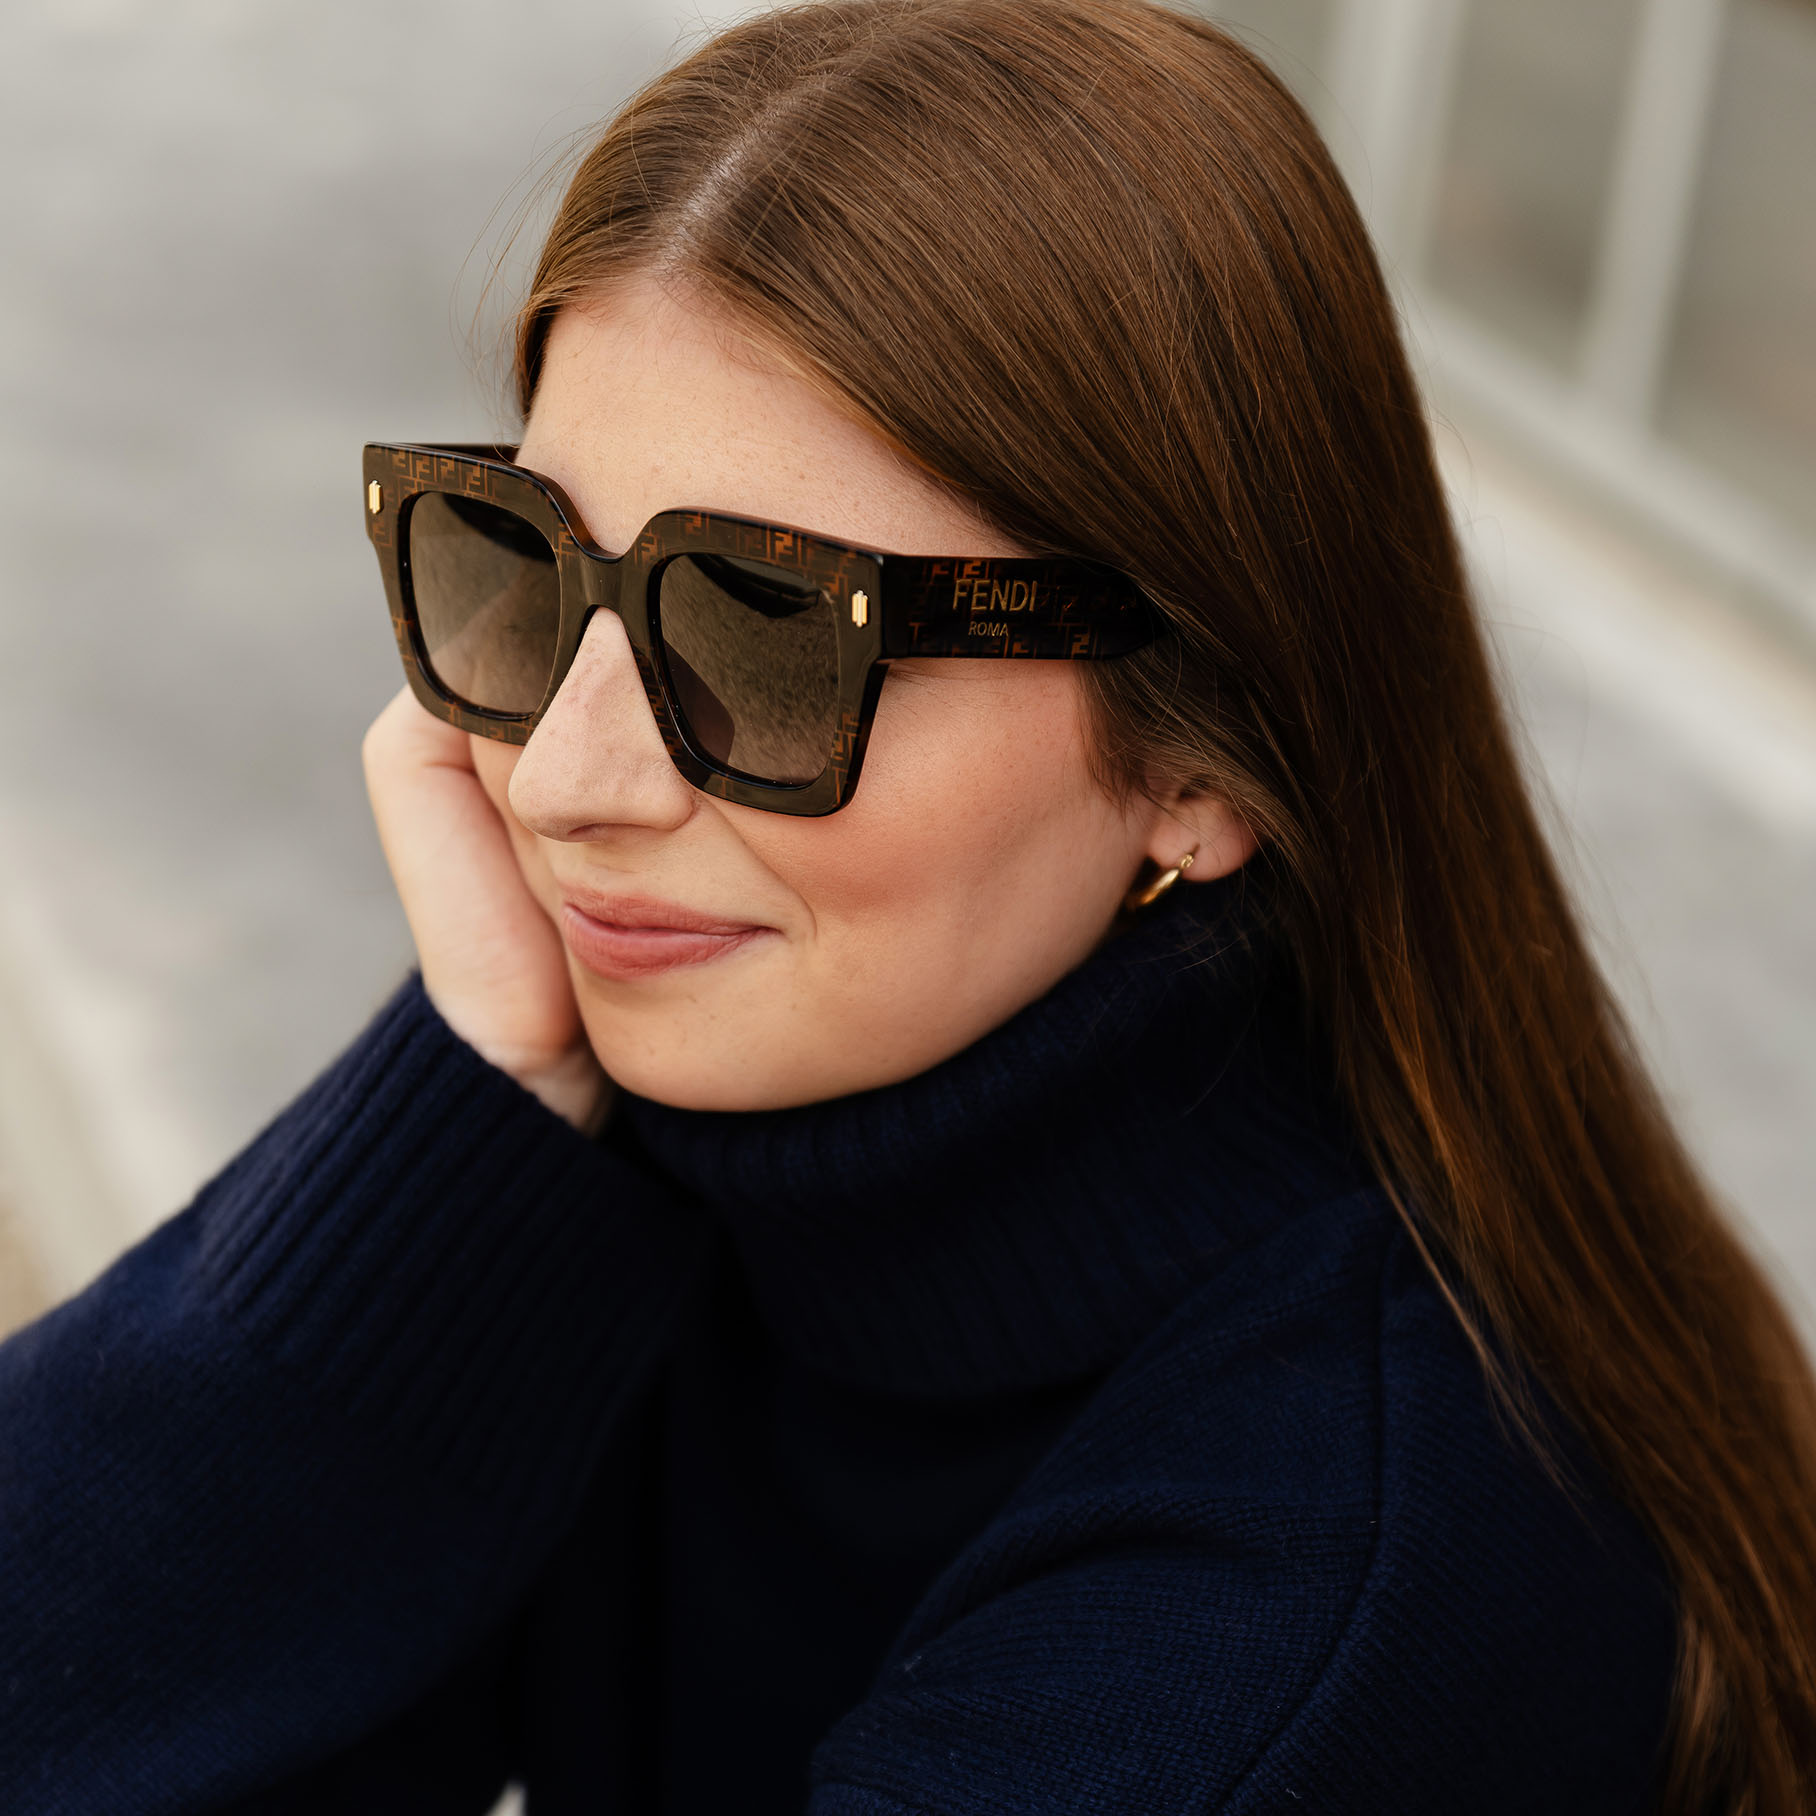 Fendi zonnebrillen - shop online of in de winkel van optiek Lammerant